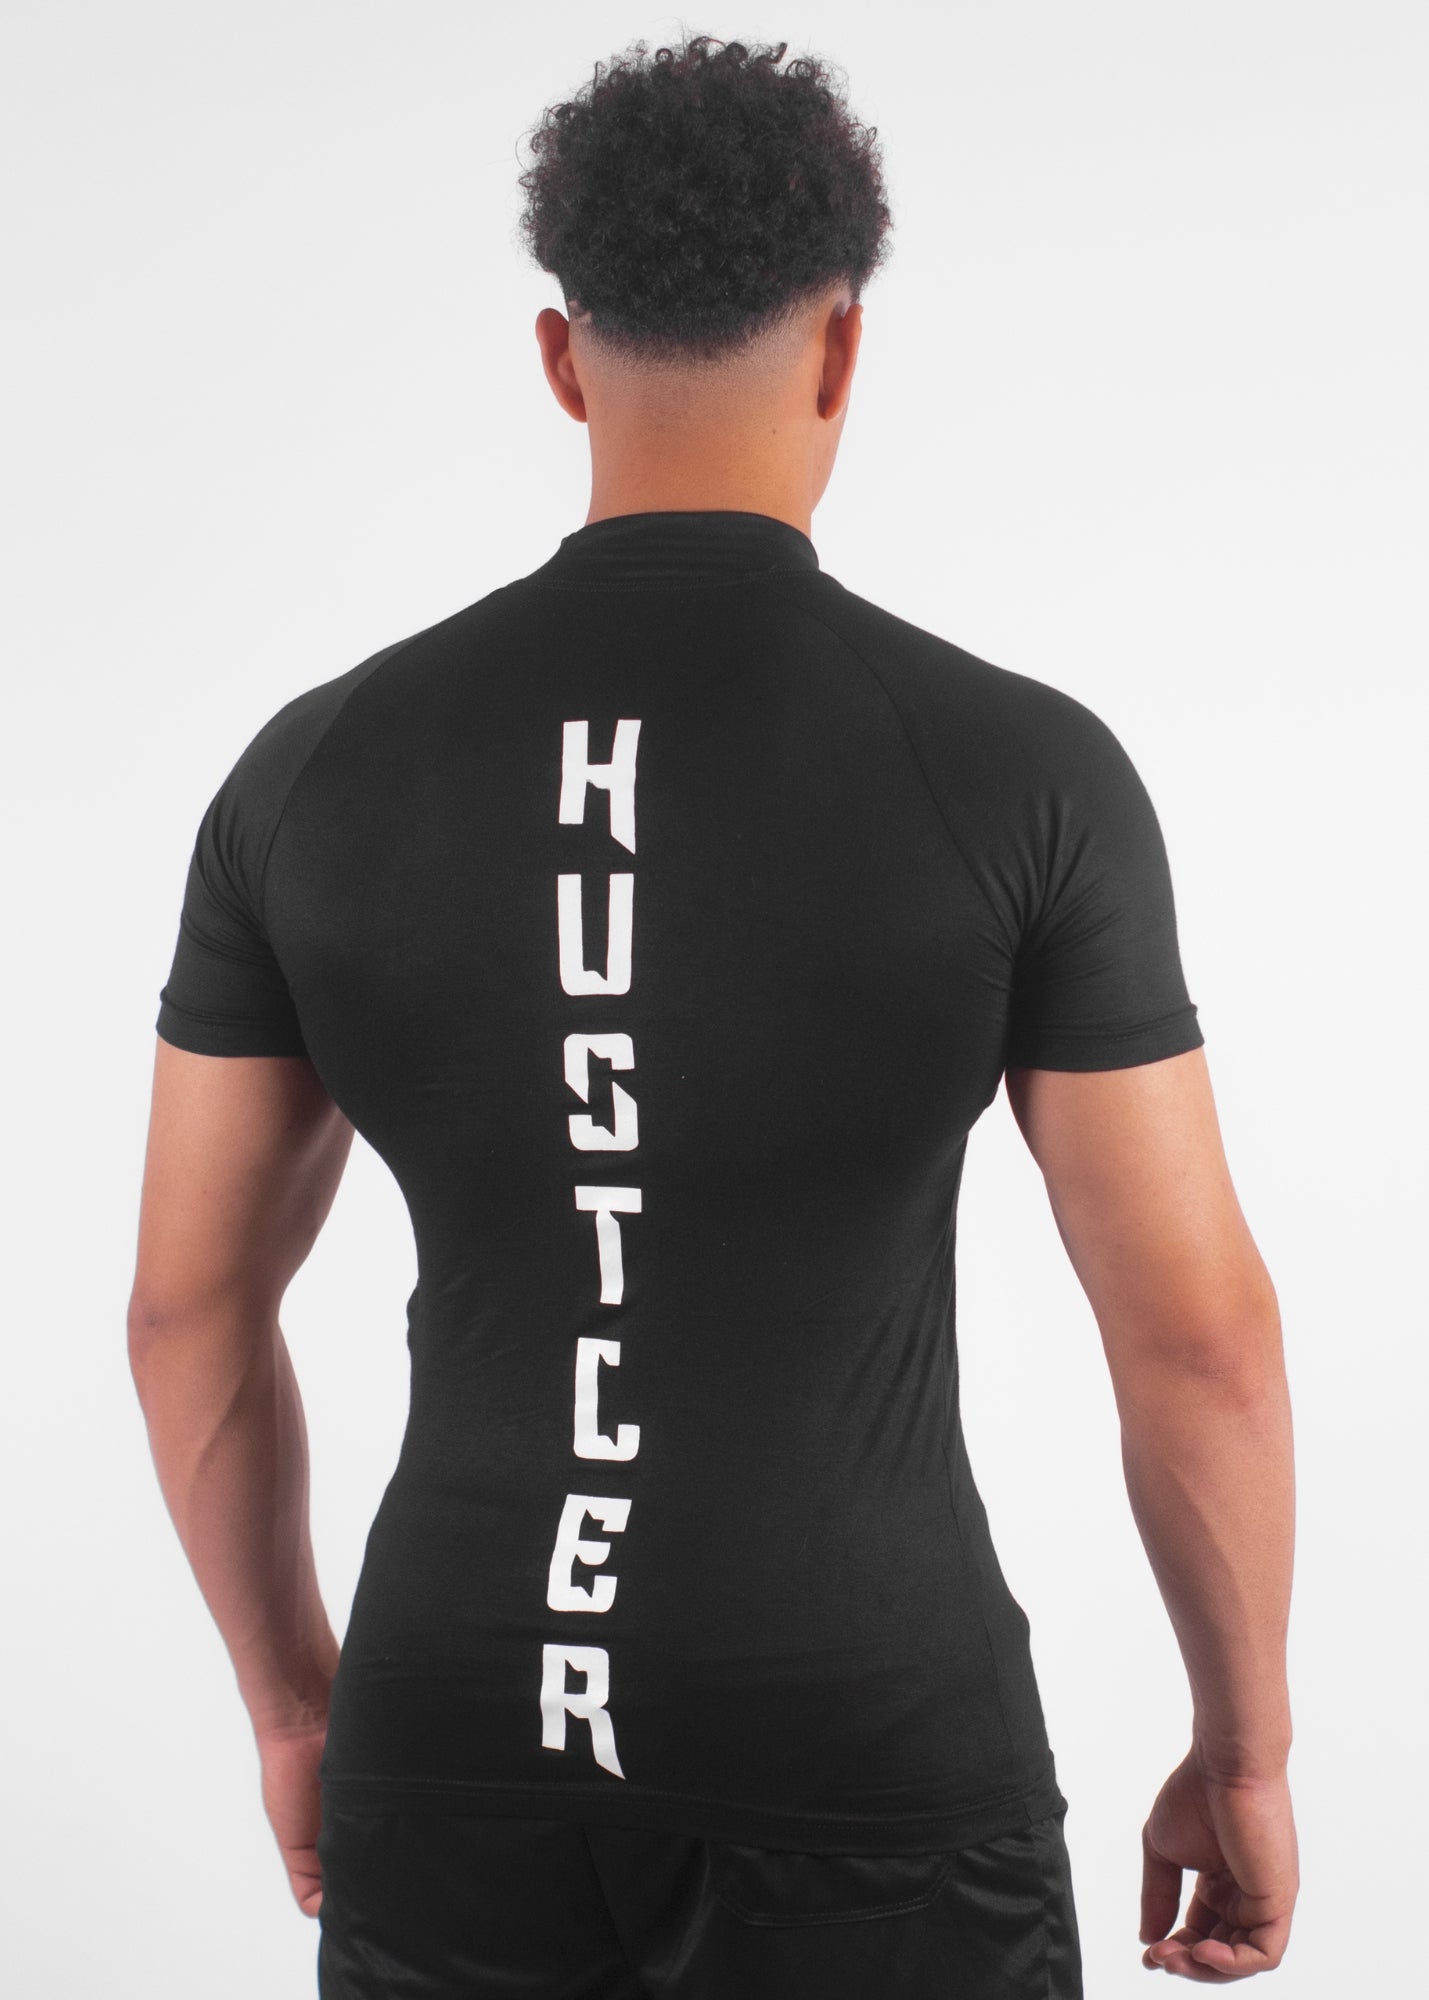 APEX™ Compression T-Shirt “HUSTLER” – BLACK 